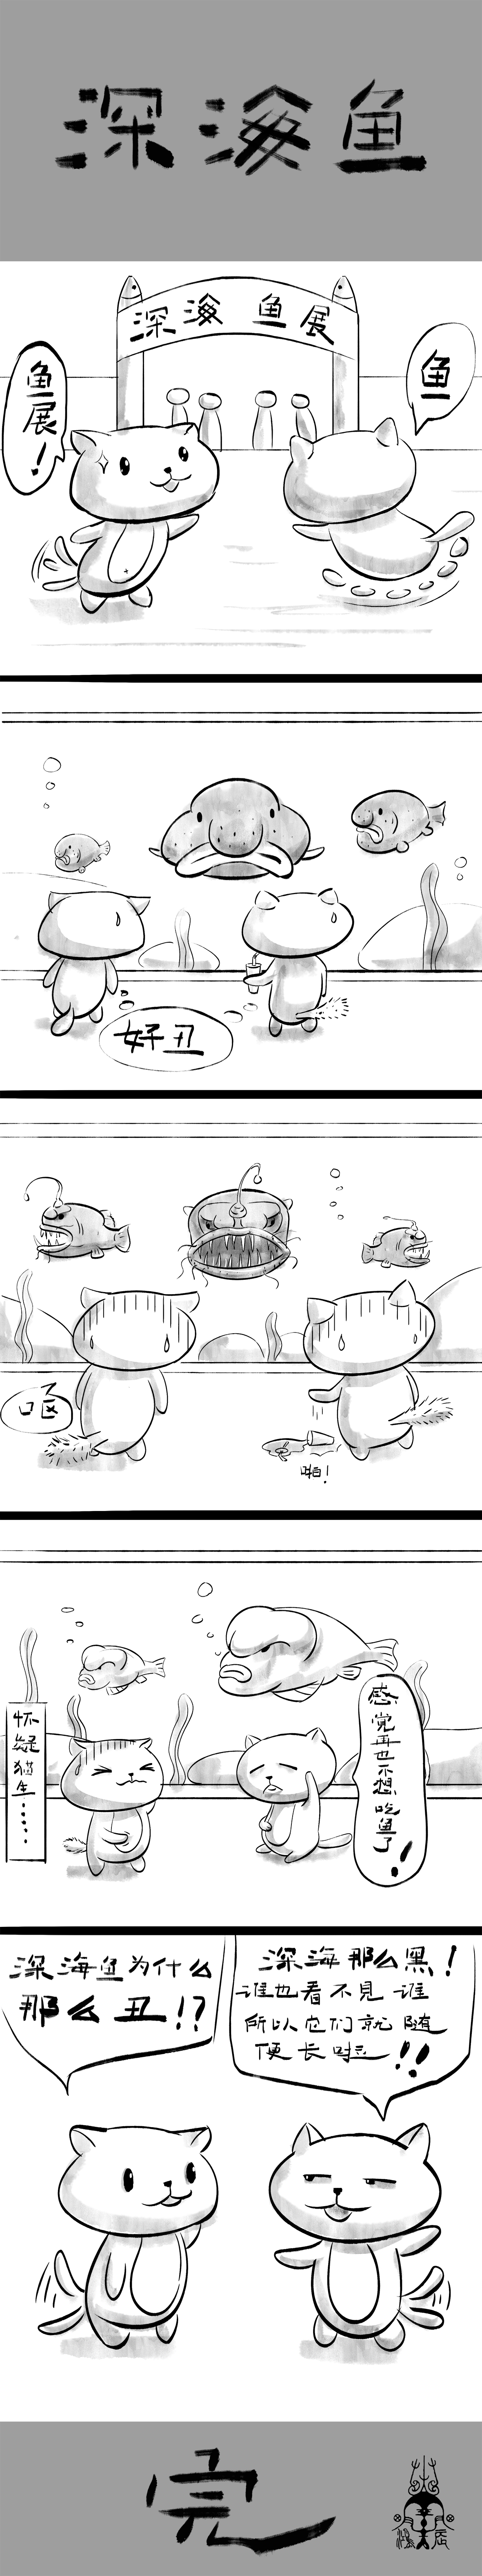 Ace萌宠小漫画系列——深海鱼